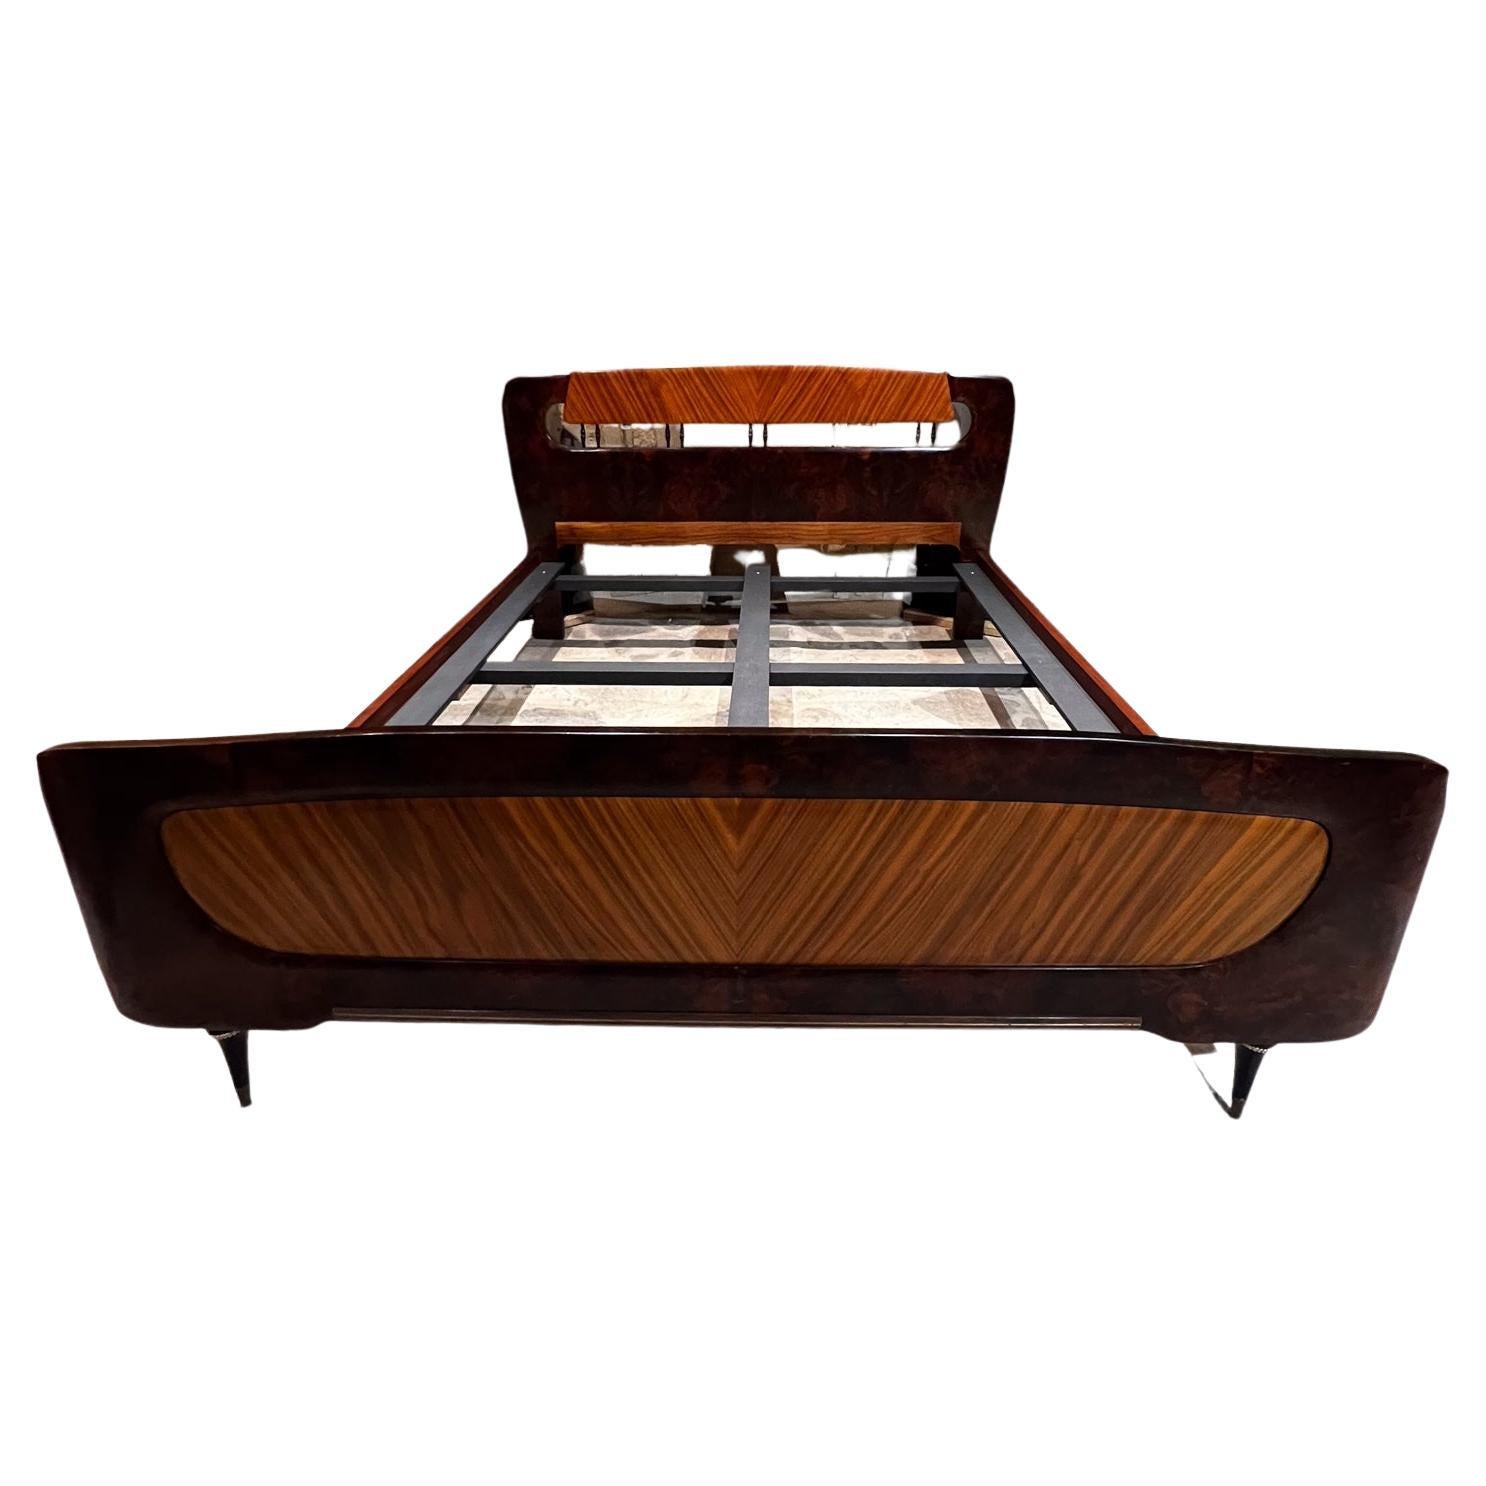 1950s Divine Burl Wood Queen Bed by Osvaldo Borsani Milan Italy
Pas de cachet du fabricant.
Construction sculpturale en bois exotique. 
Lit monté sur des pieds fabuleusement effilés.
69 l x 82,5 
Tête de lit 38.75 
Pied de lit 24.85
Surface